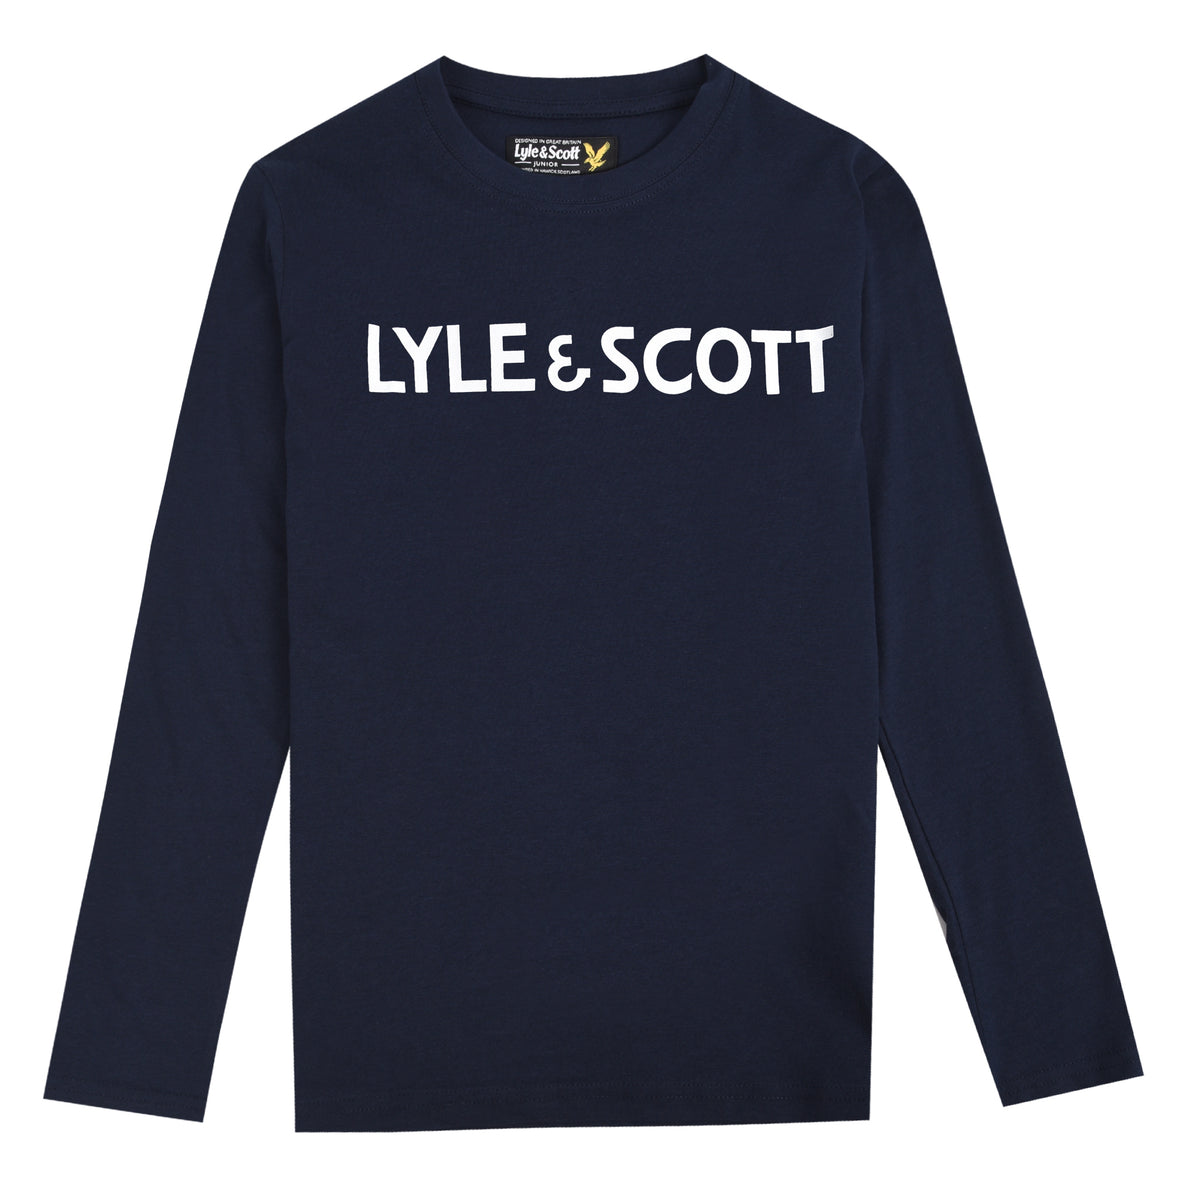 Lyle & Scott 'Text Tee' Long Sleeved T-Shirt, 01, Lsc0951, Navy Blazer